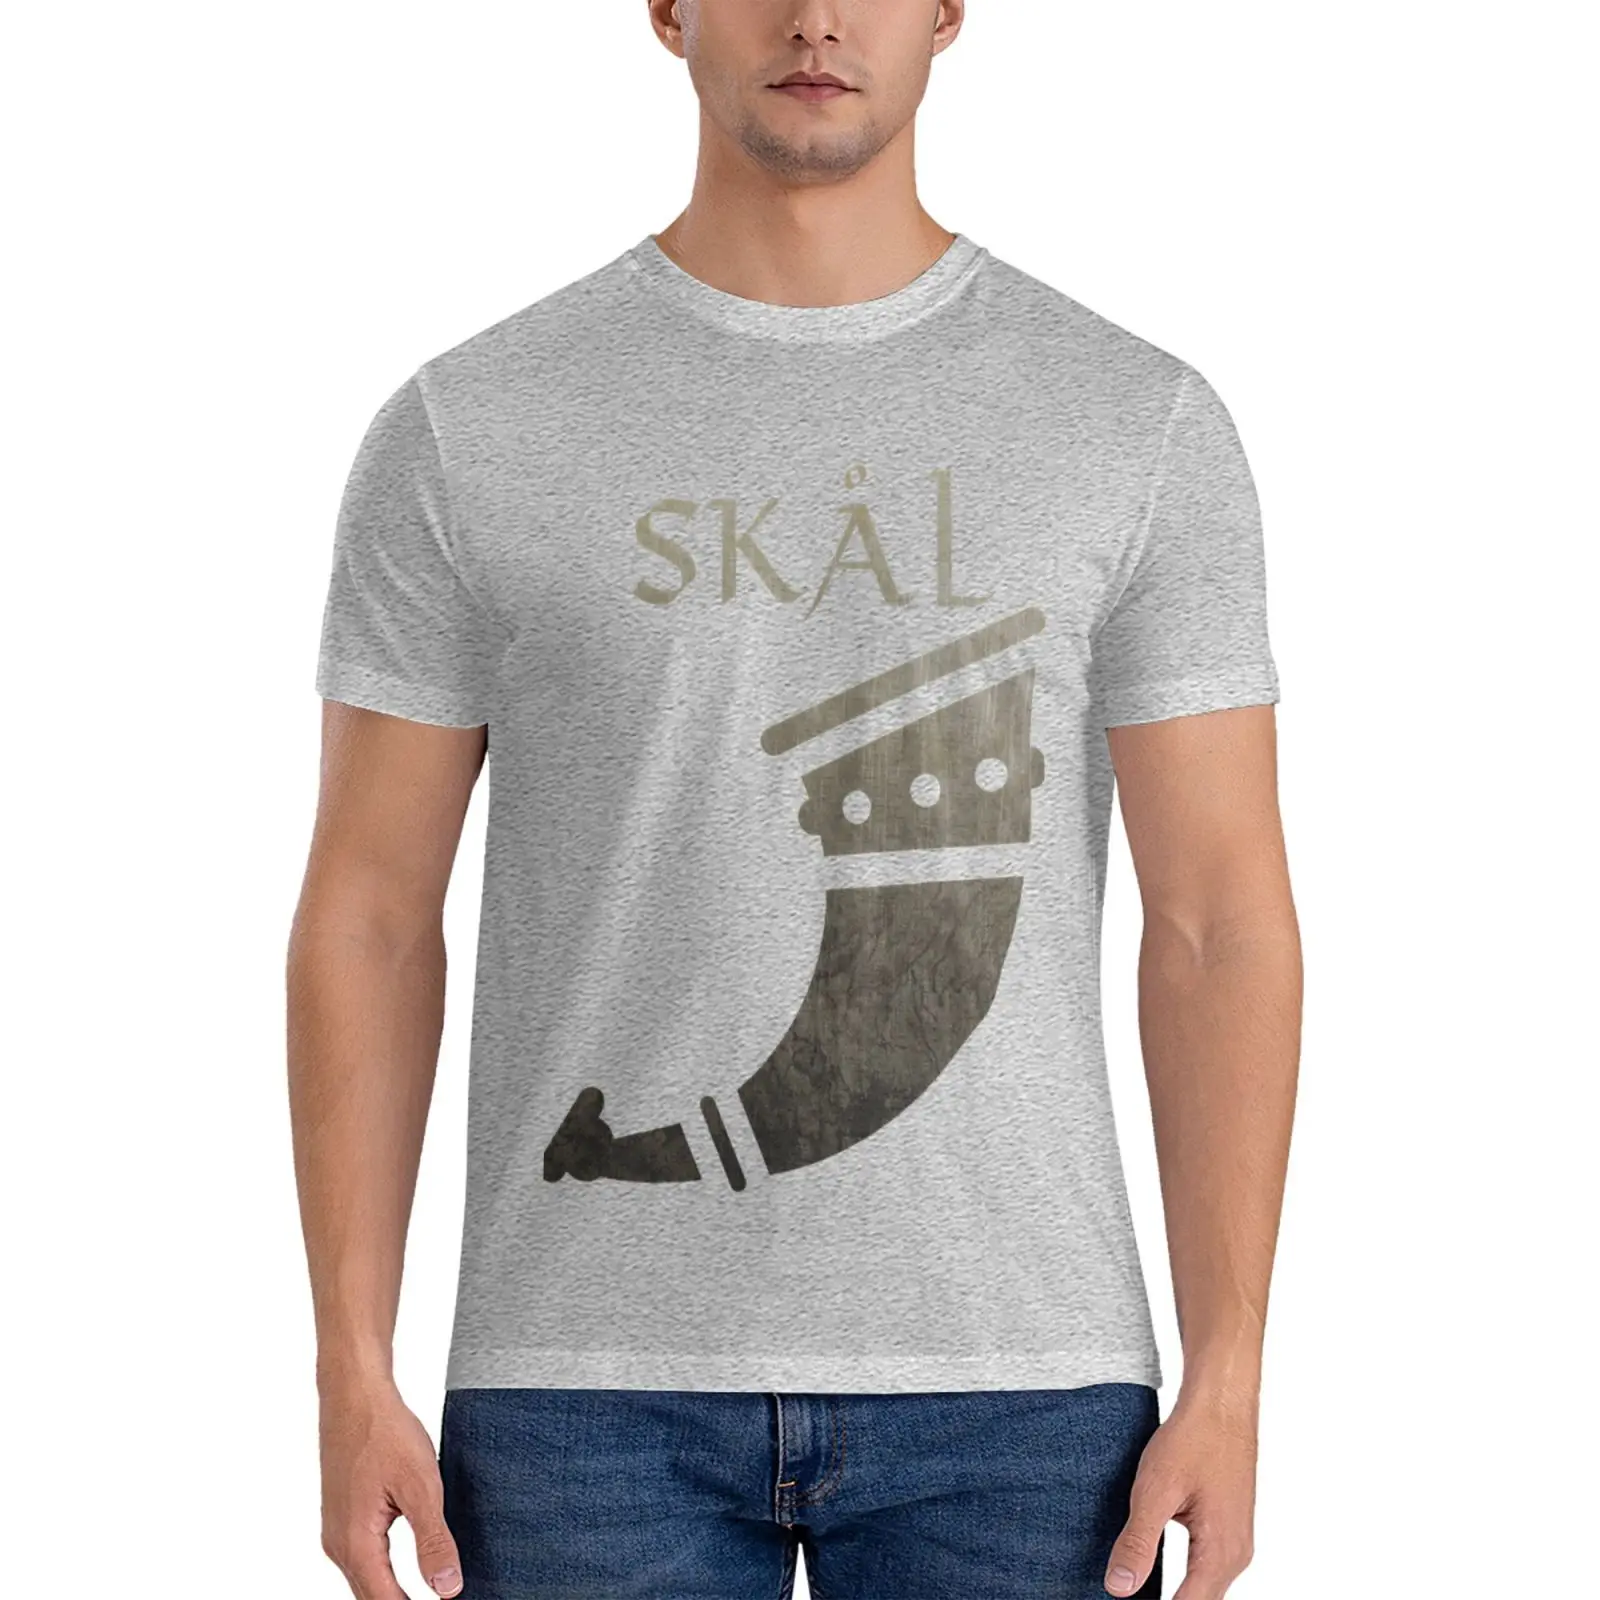 Классическая футболка Vikings - Skal, футболка оверсайз, короткая футболка оверсайз, мужская футболка